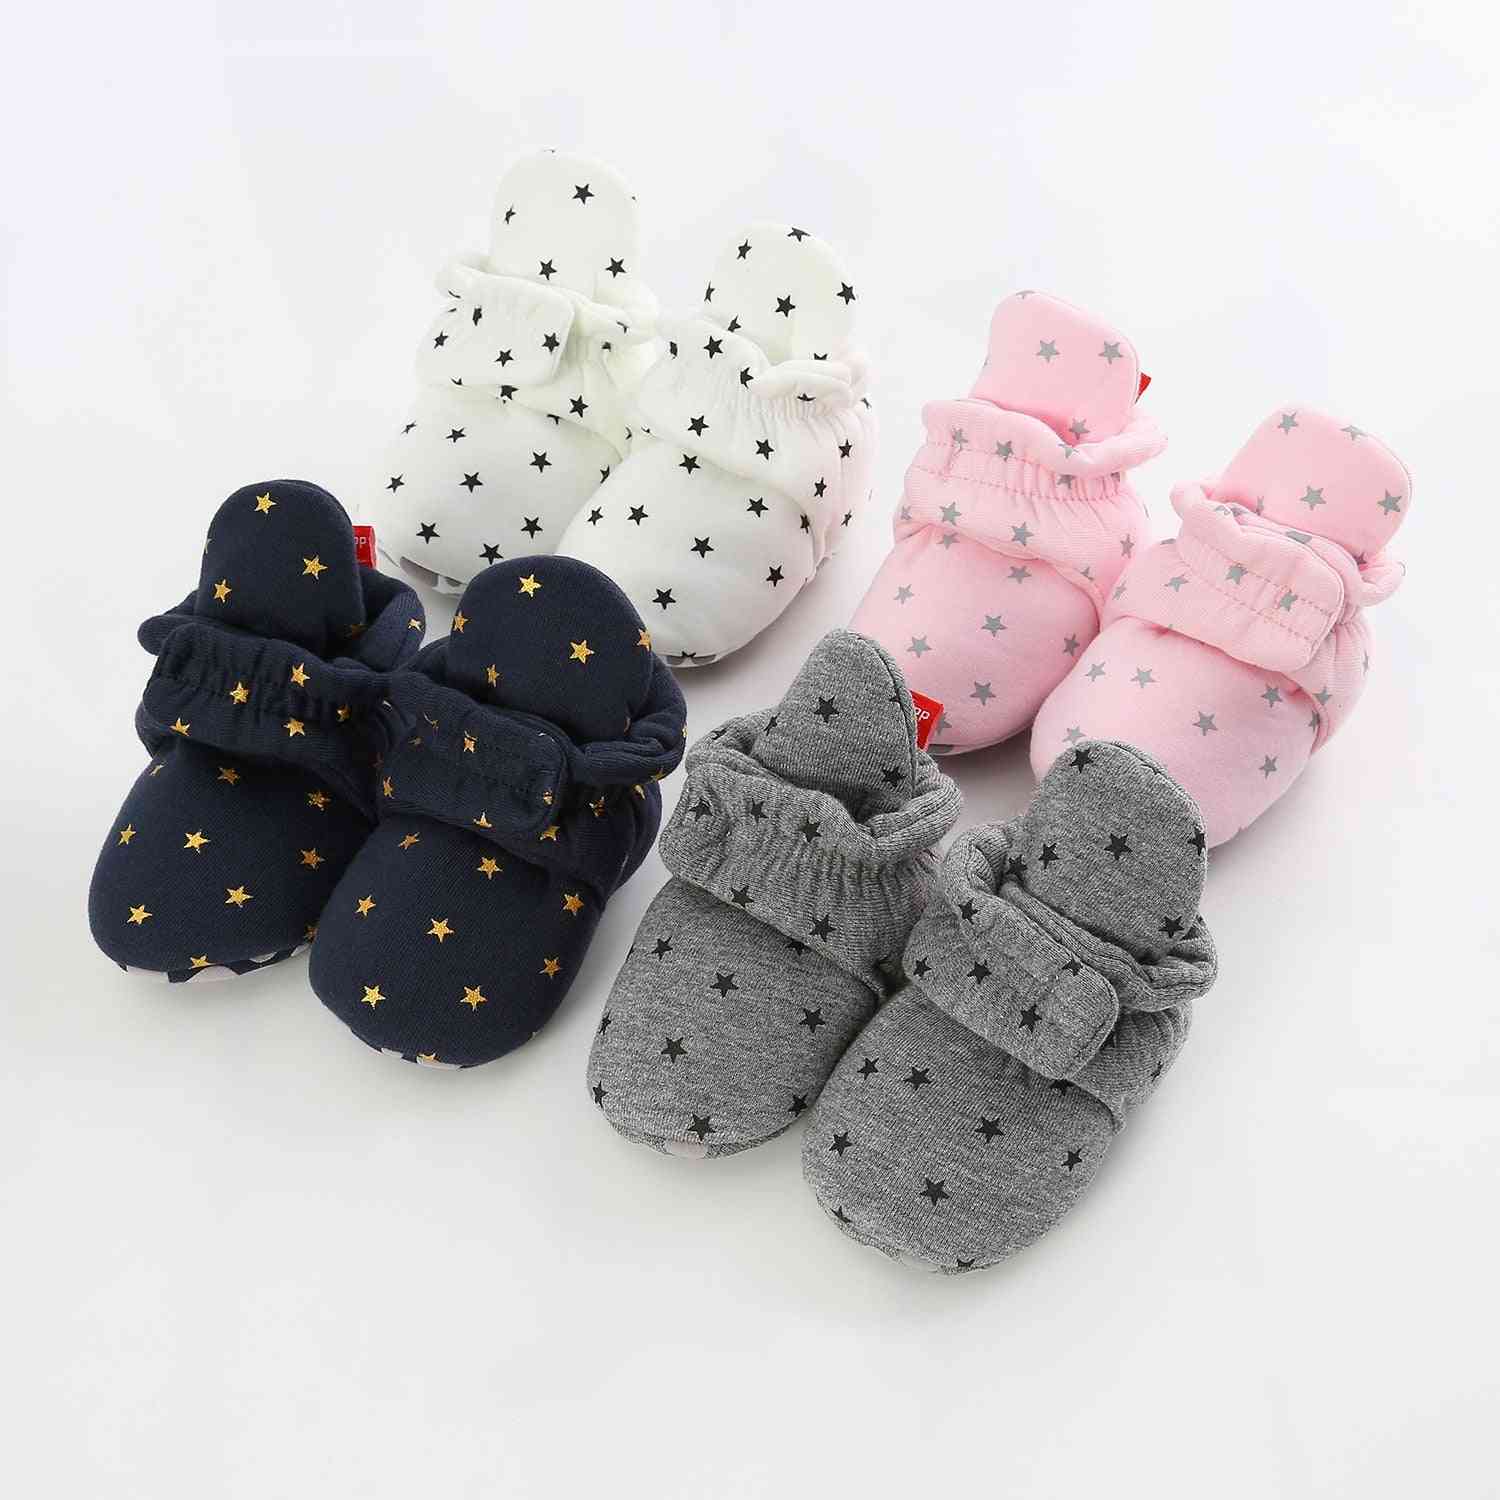 Neugeborene Socken Schuhe, Jungen, Mädchen Star Kleinkind First Walker Booties Baumwolle weich - b / 0-6 Monate